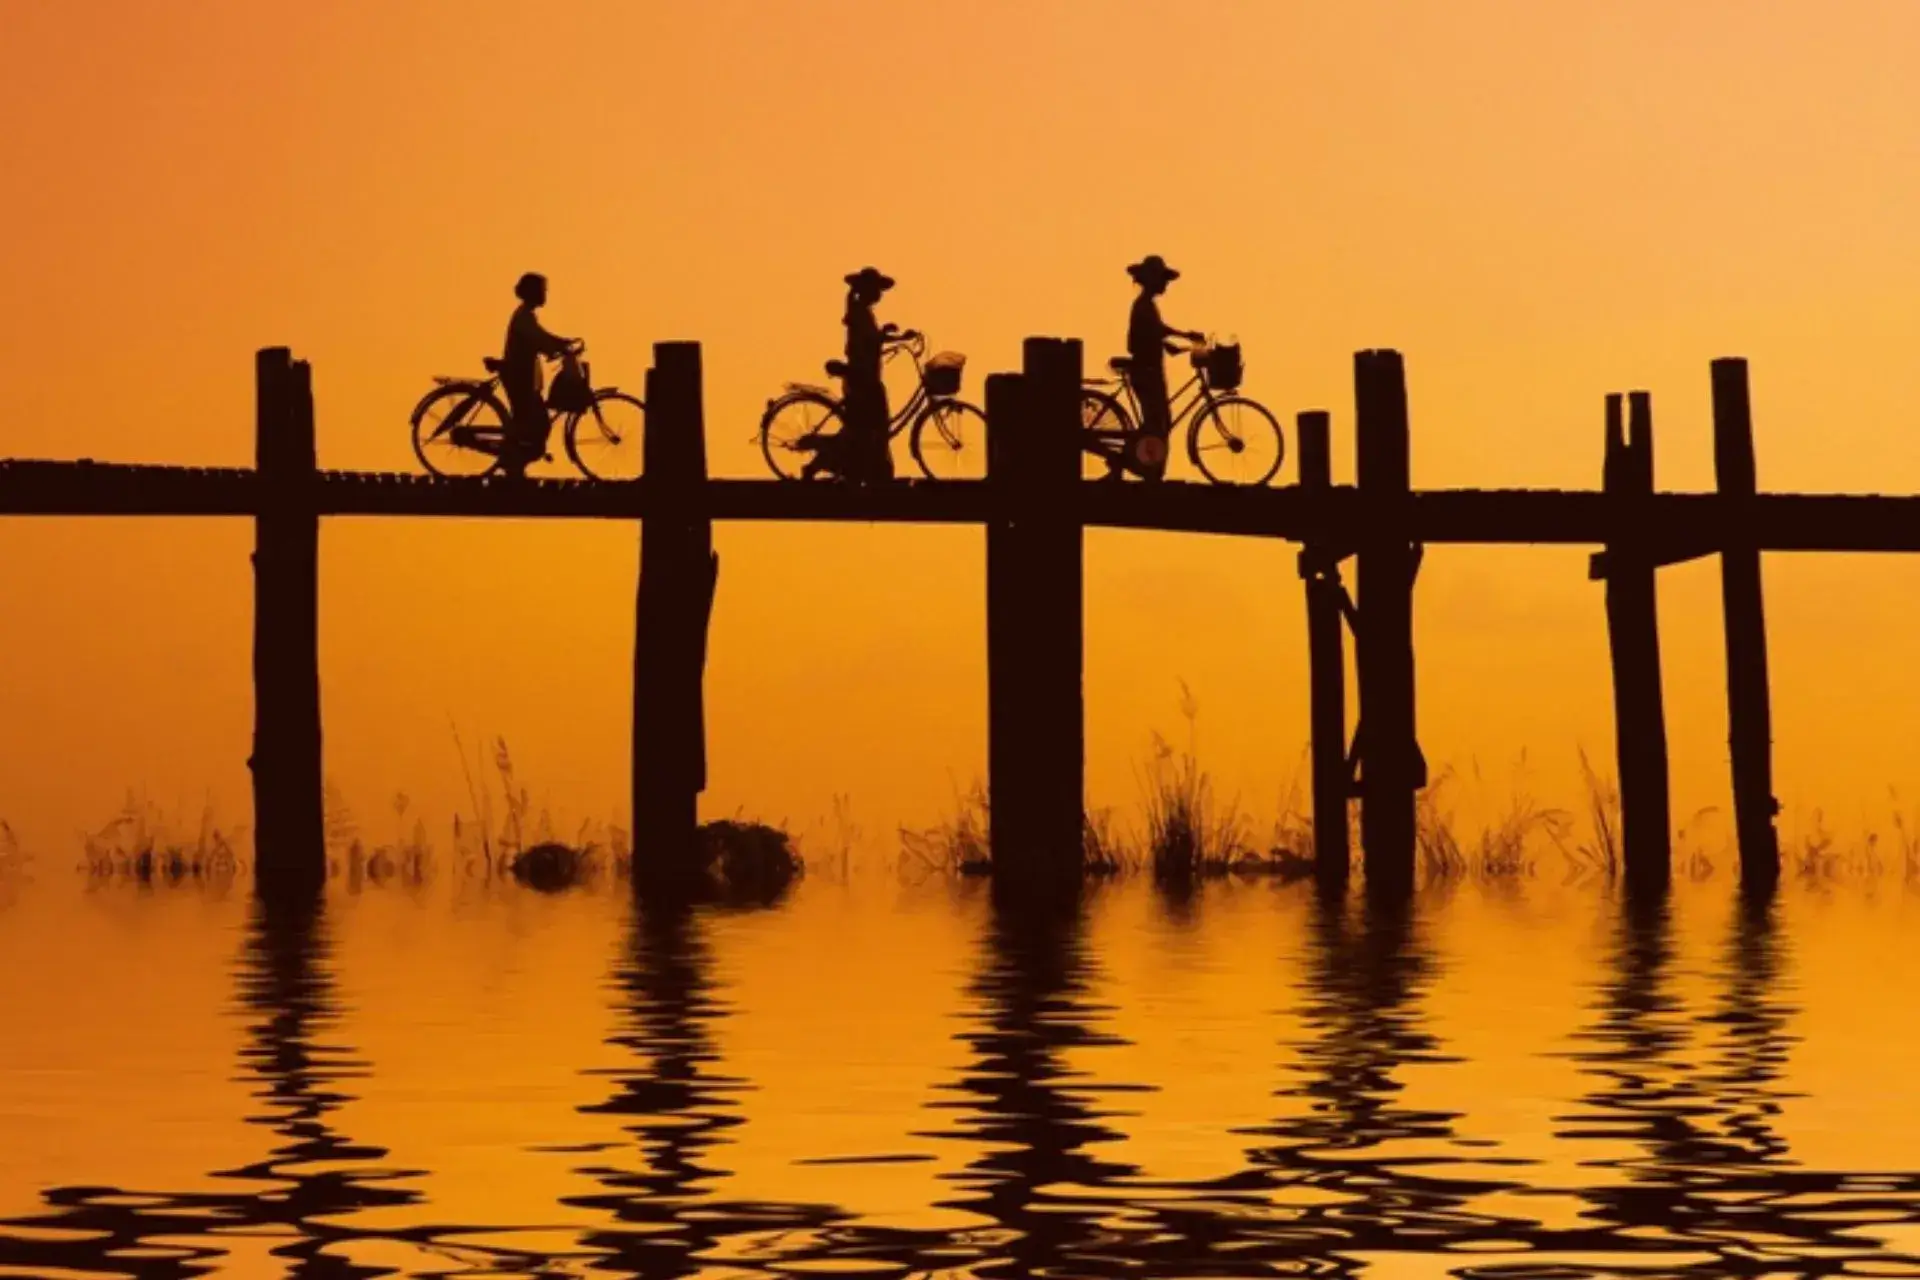 Color anaranjado de un paisaje de agua y la sombra de unos ciclistas al fondo